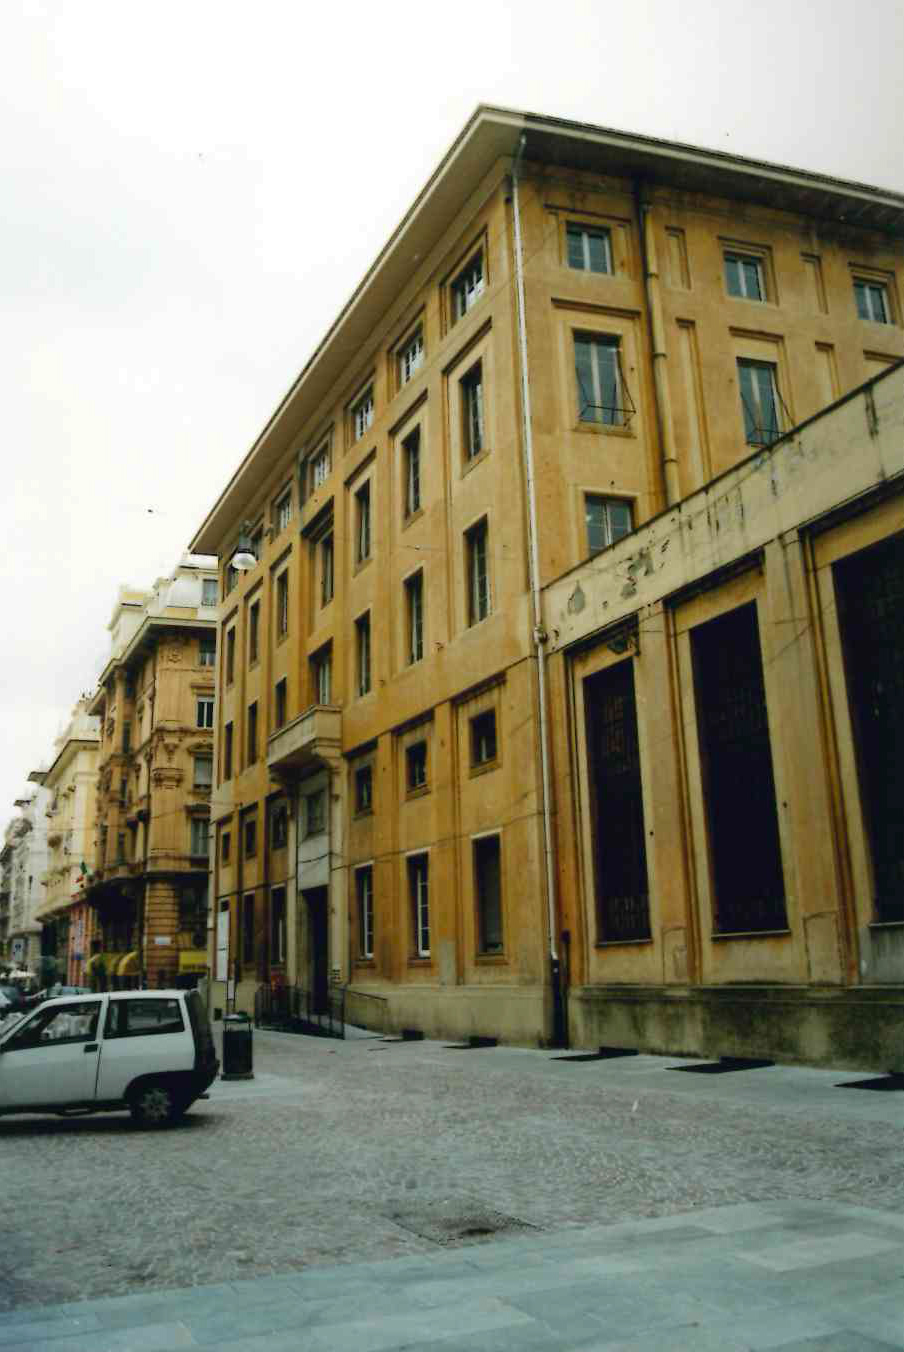 Istituto tecnico regionale "G.Martino" (palazzo, regionale/provinciale) - Genova (GE)  (XX, primo quarto)